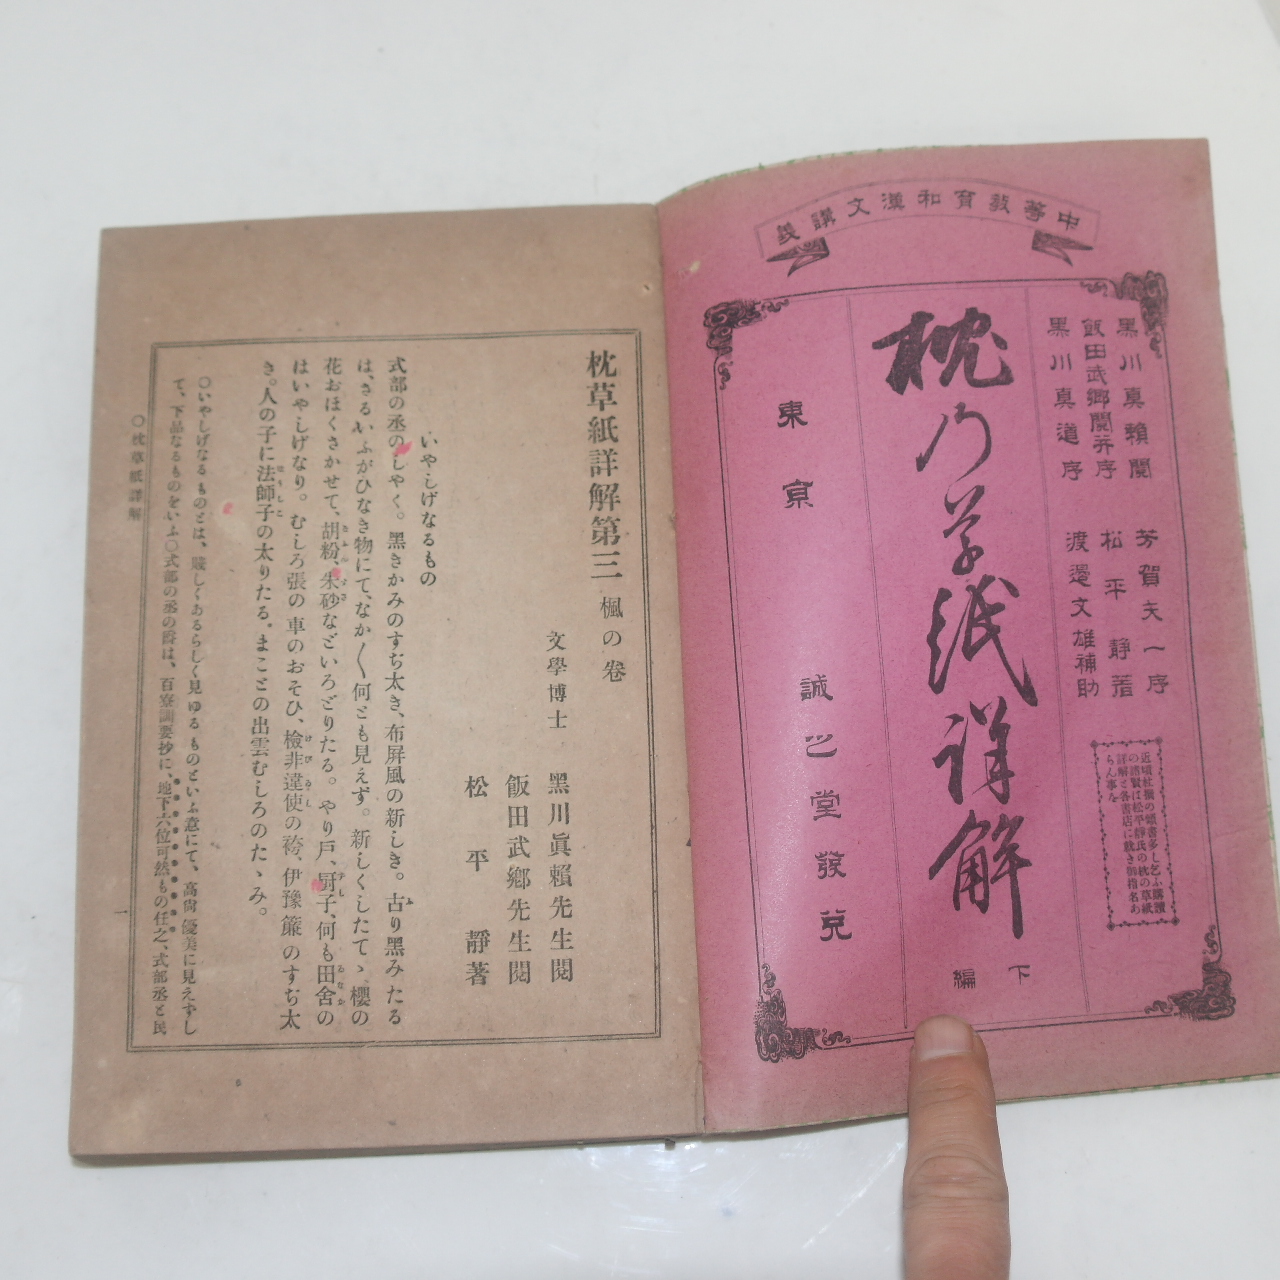 1900년(명치33년) 일본간행 침초지상해(枕草紙詳解)권3